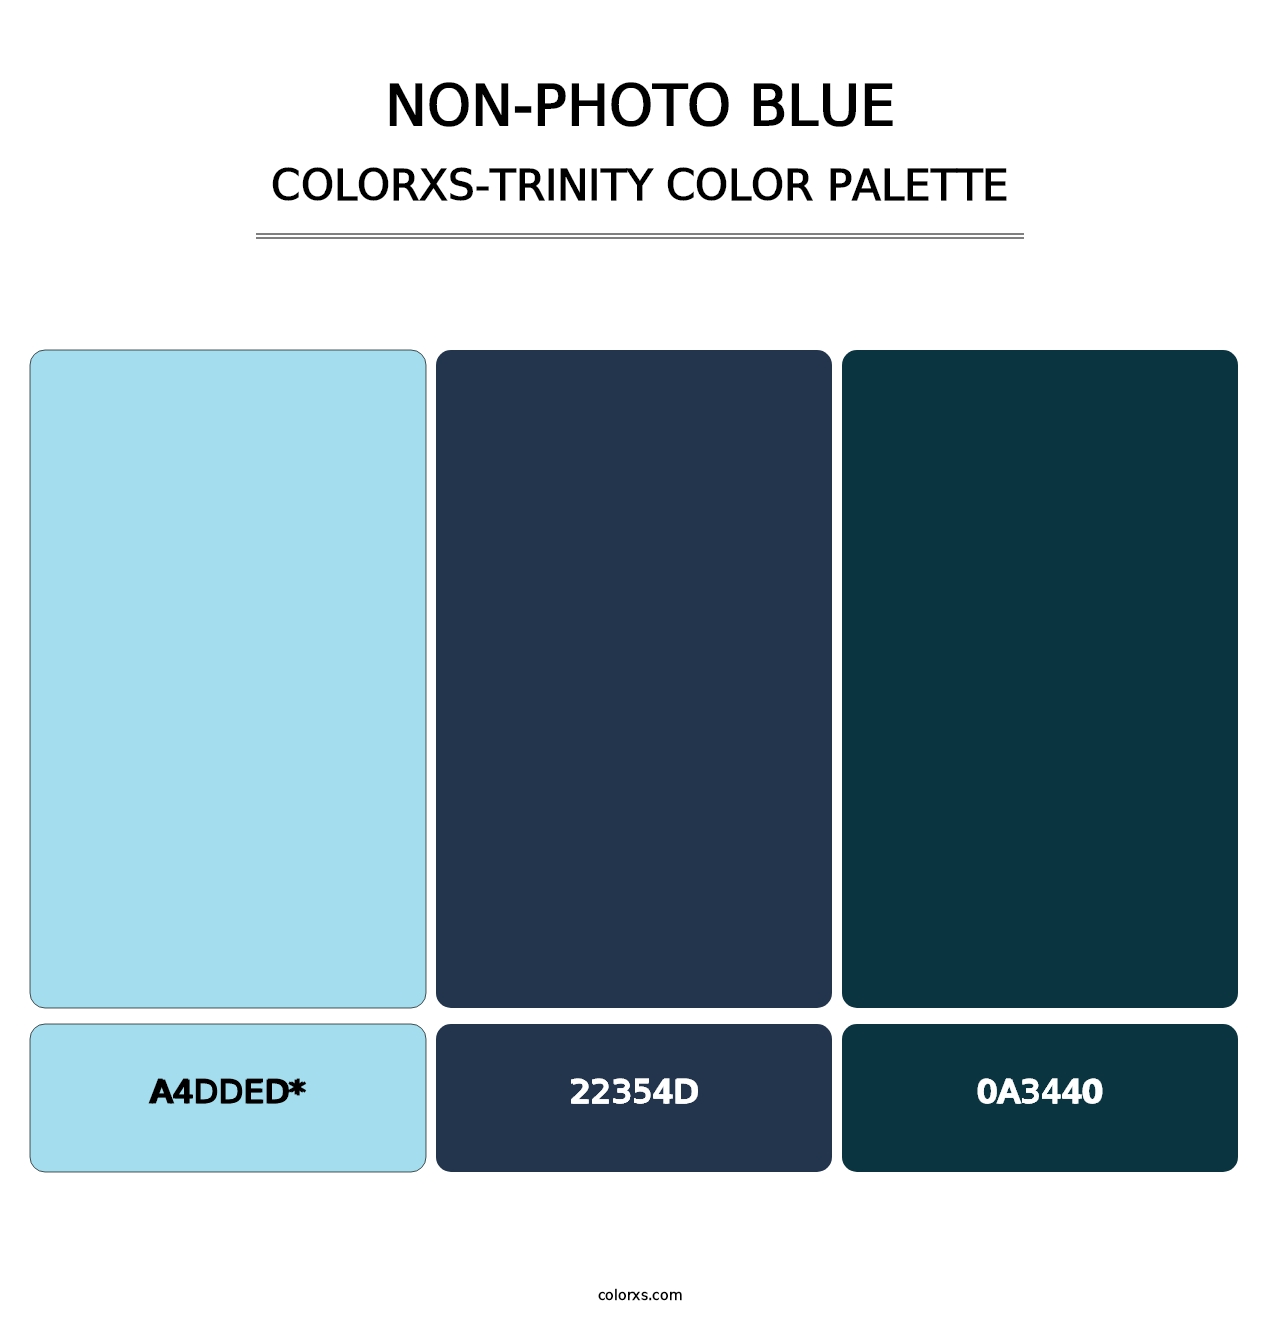 Non-photo Blue - Colorxs Trinity Palette